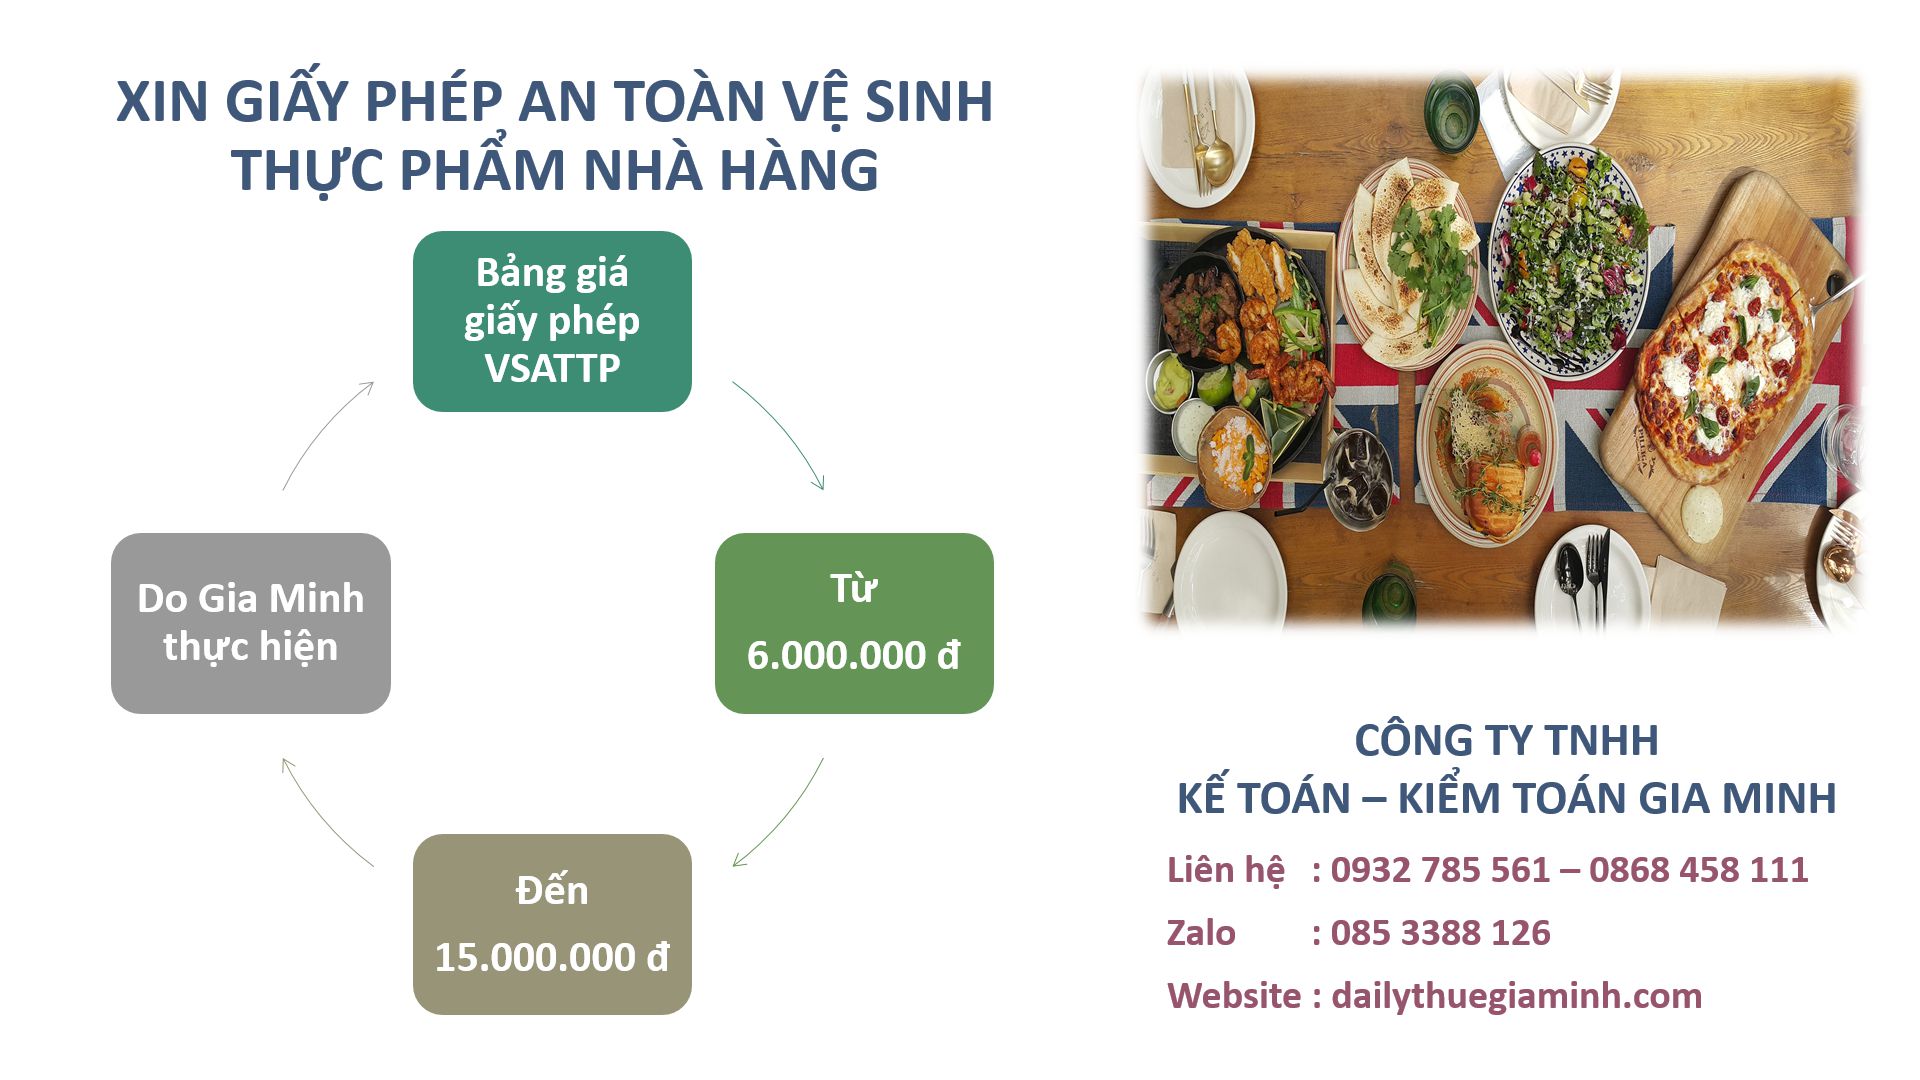 Xin giấy phép vệ sinh an toàn thực phẩm nhà hàng tại Thành phố Hồ Chí Minh